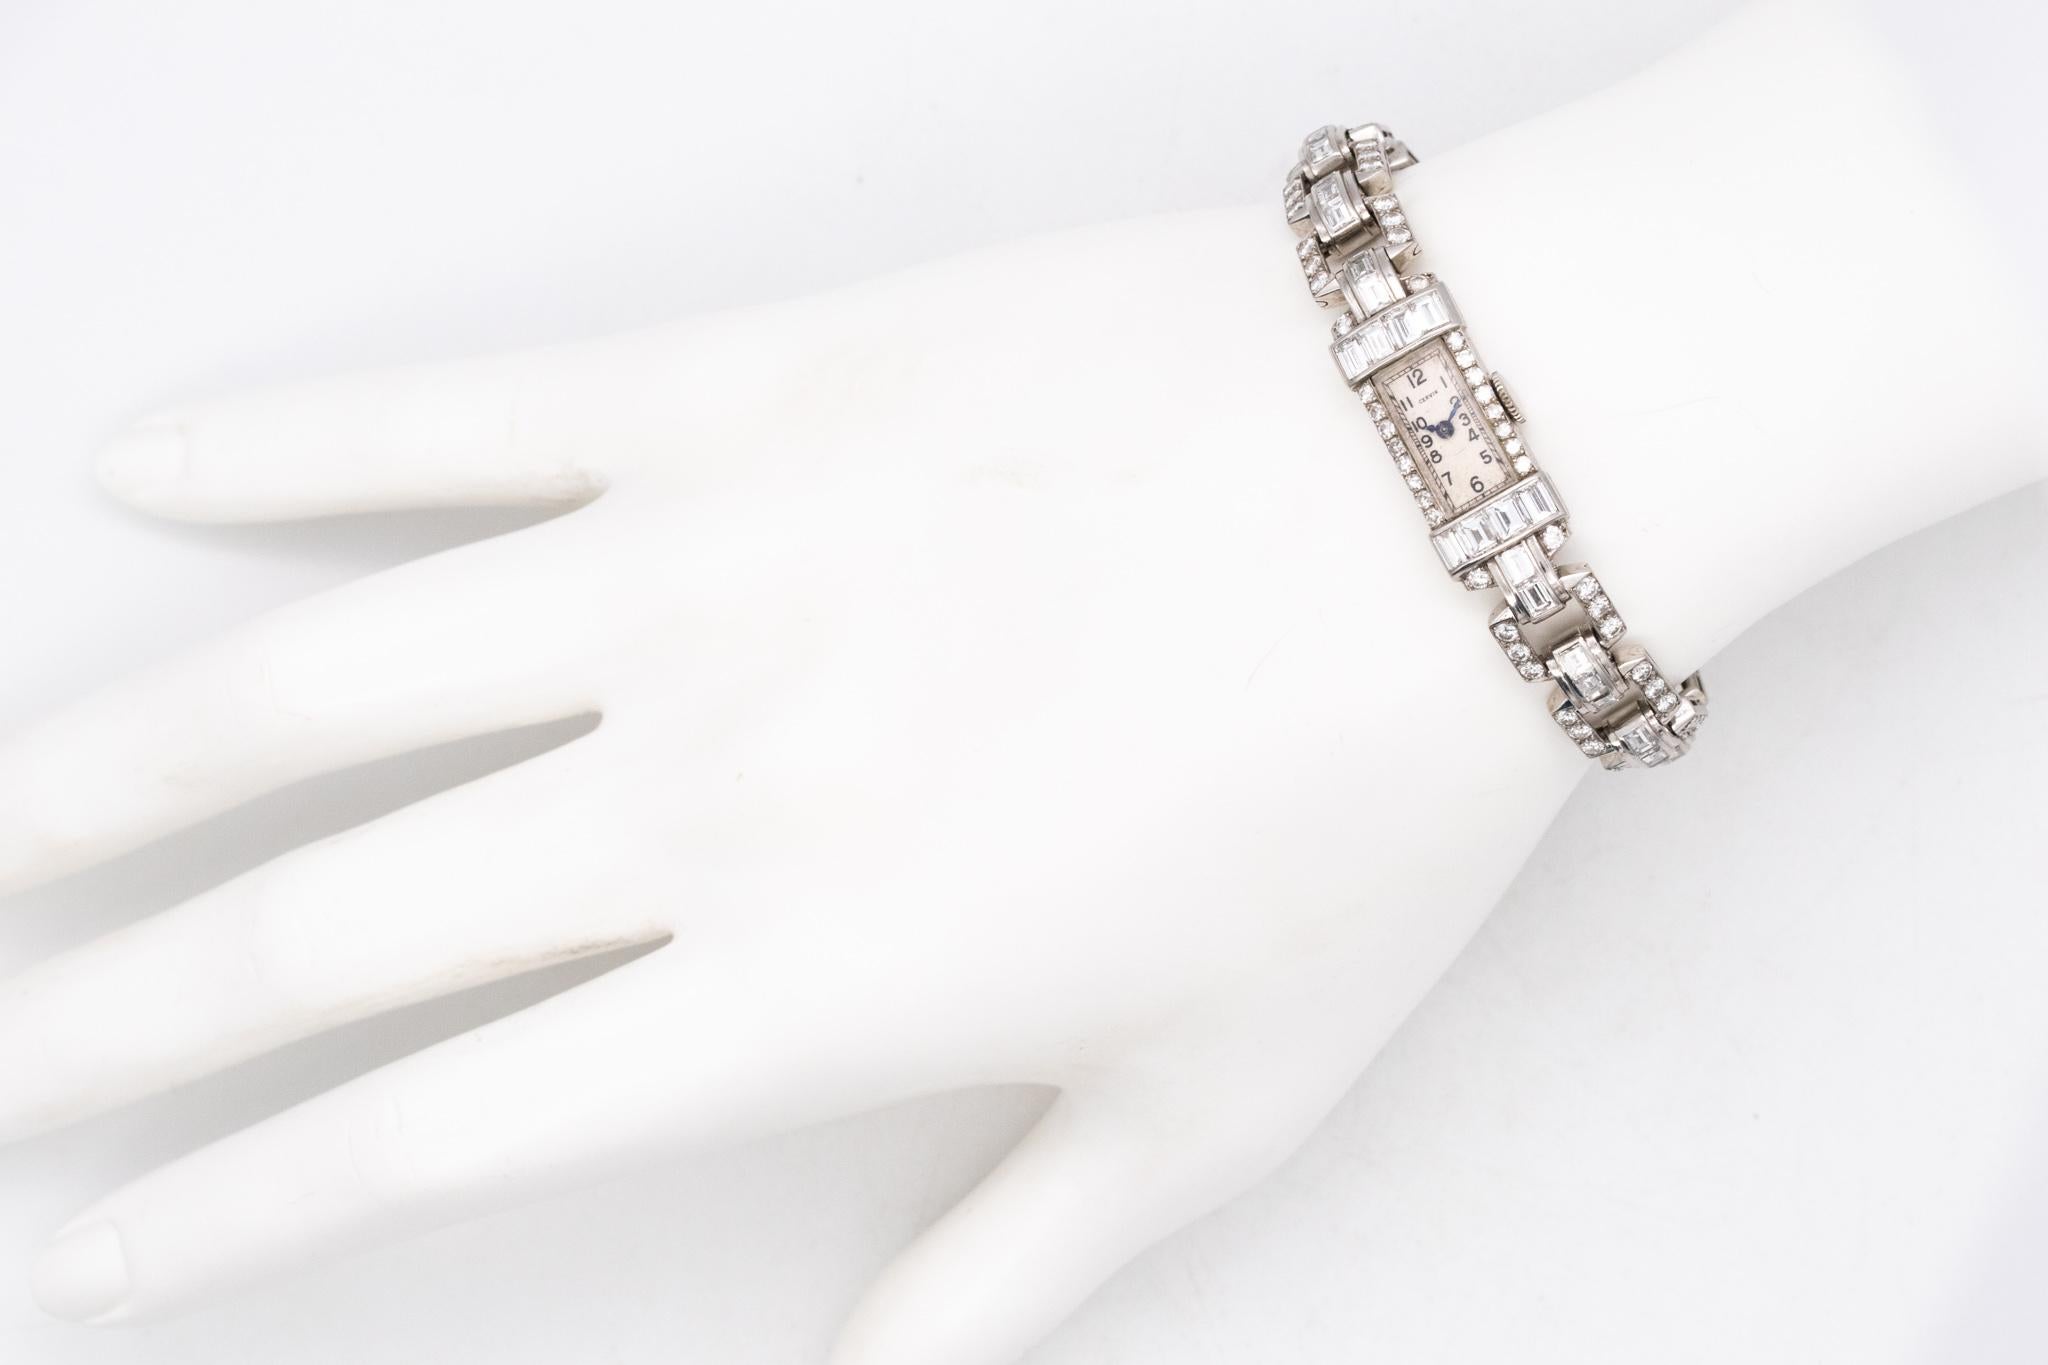 Außergewöhnliche juwelenbesetzte Art Deco Platin Armbanduhr.

Ein schönes und elegantes Cocktailstück aus der Zeit des Art déco um 1930. Diese Damenarmbanduhr wurde vollständig aus massivem .950/.999 Platin gefertigt und besteht aus mehreren